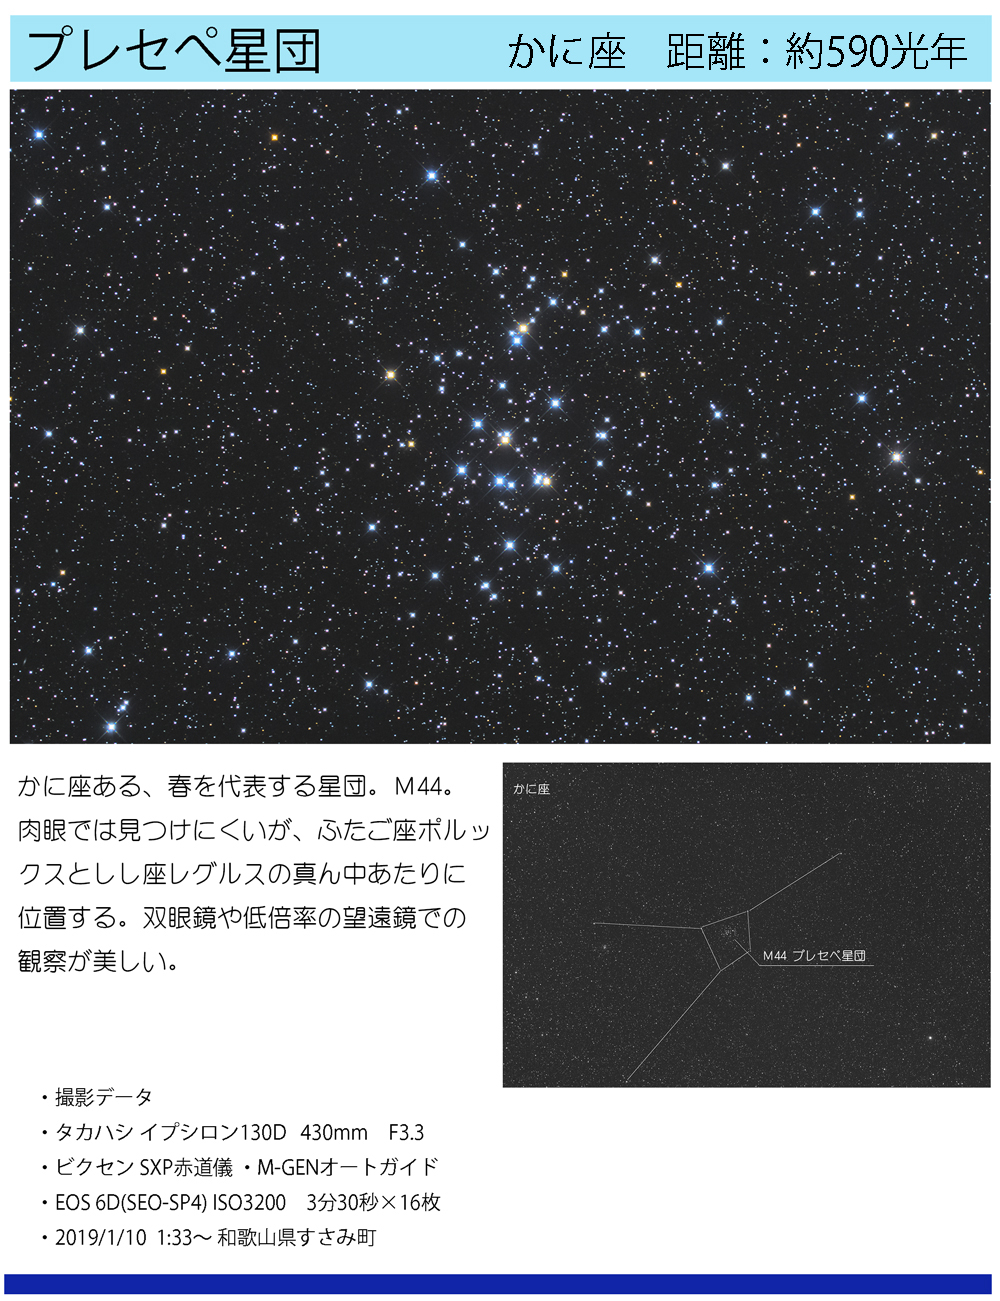 プレセぺ星団の天体写真